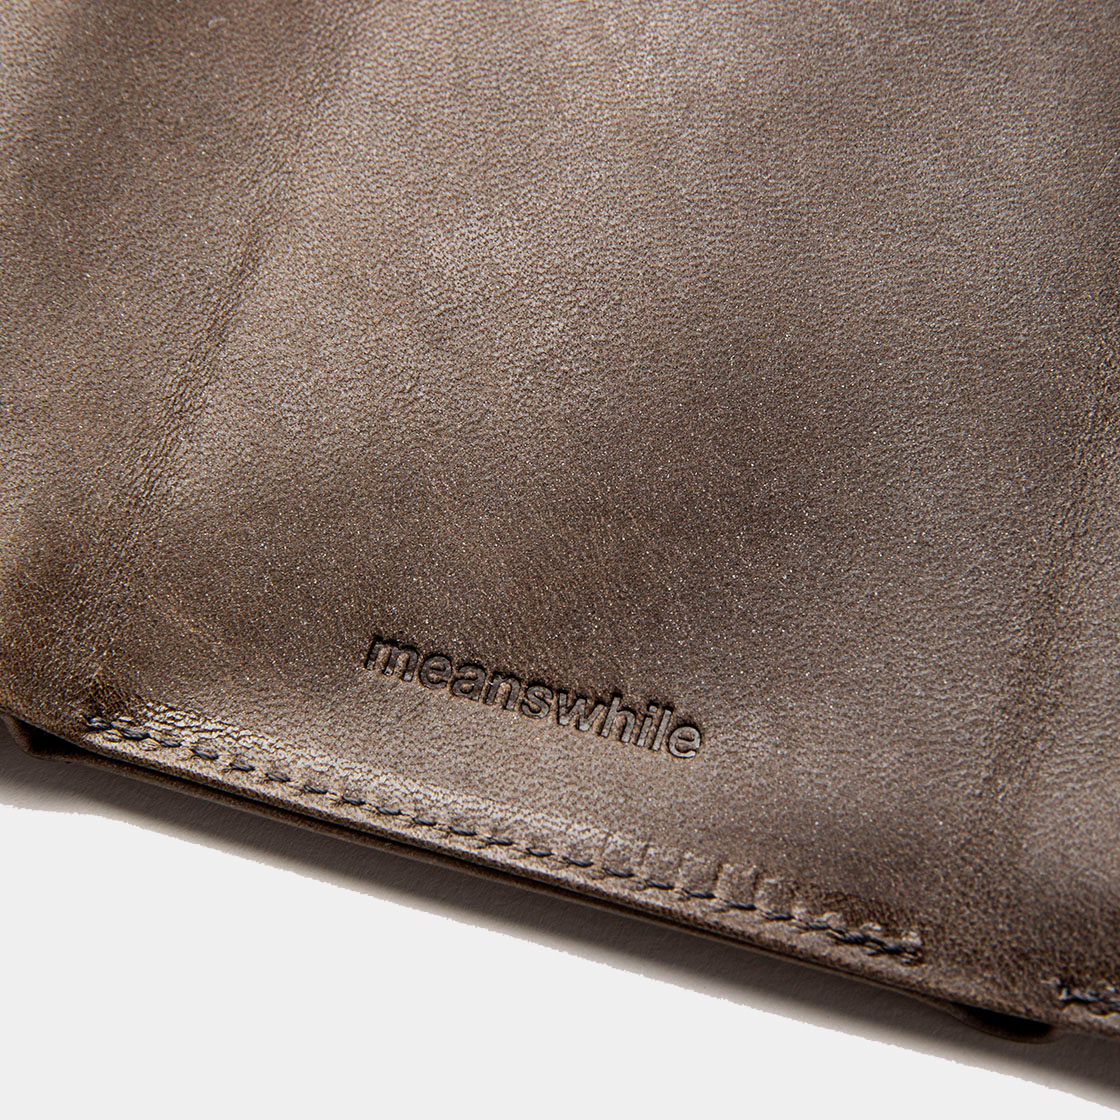 Wax Leather Minimal Wallet / Grey